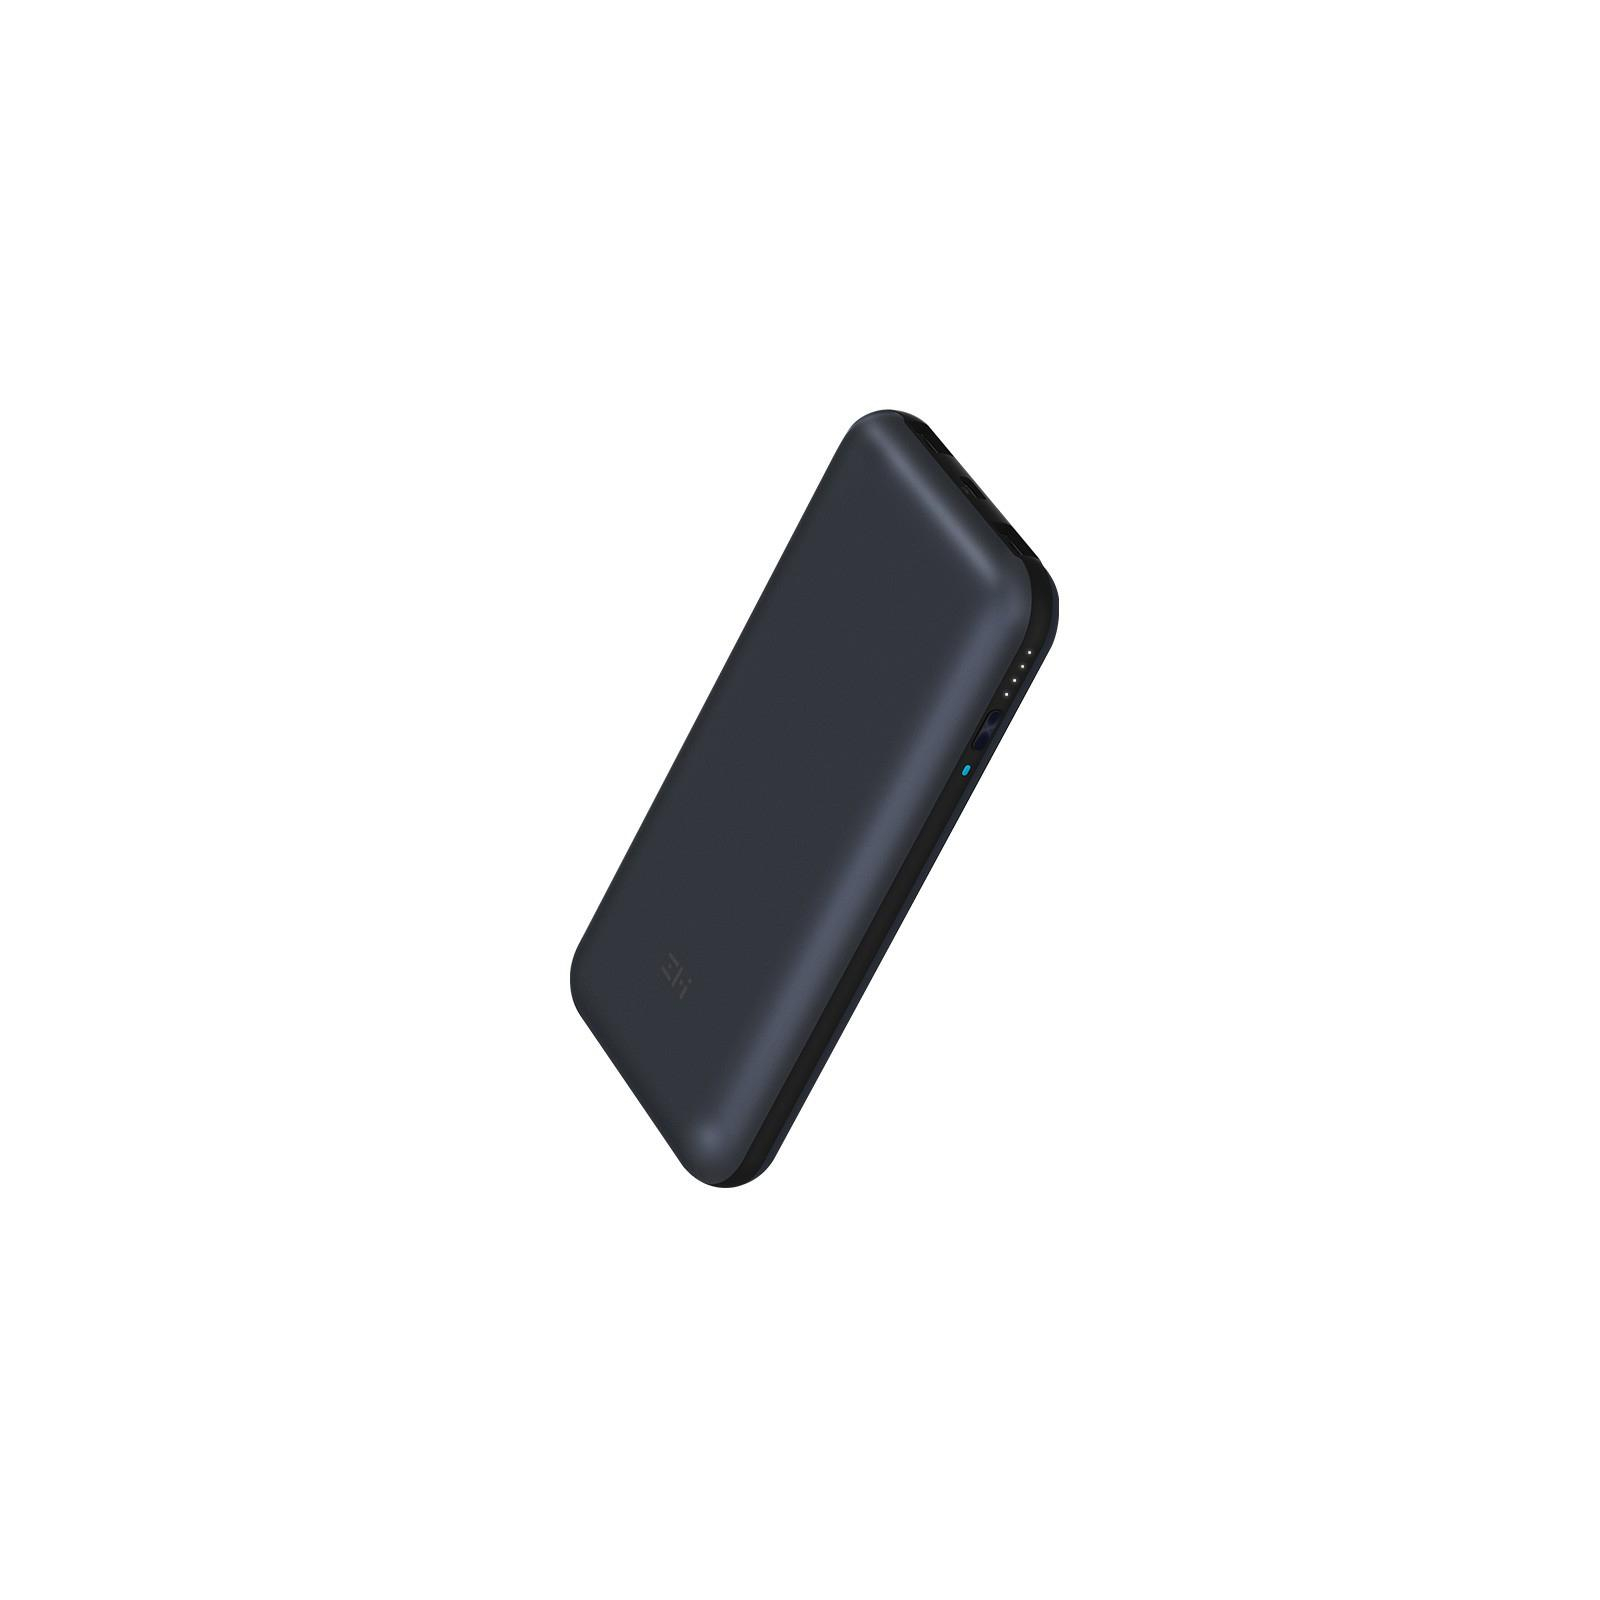 Батарея универсальная ZMI QB820 20000mAh Type-C 2*USB QC2.0/3.0 Black (QB820) изображение 2